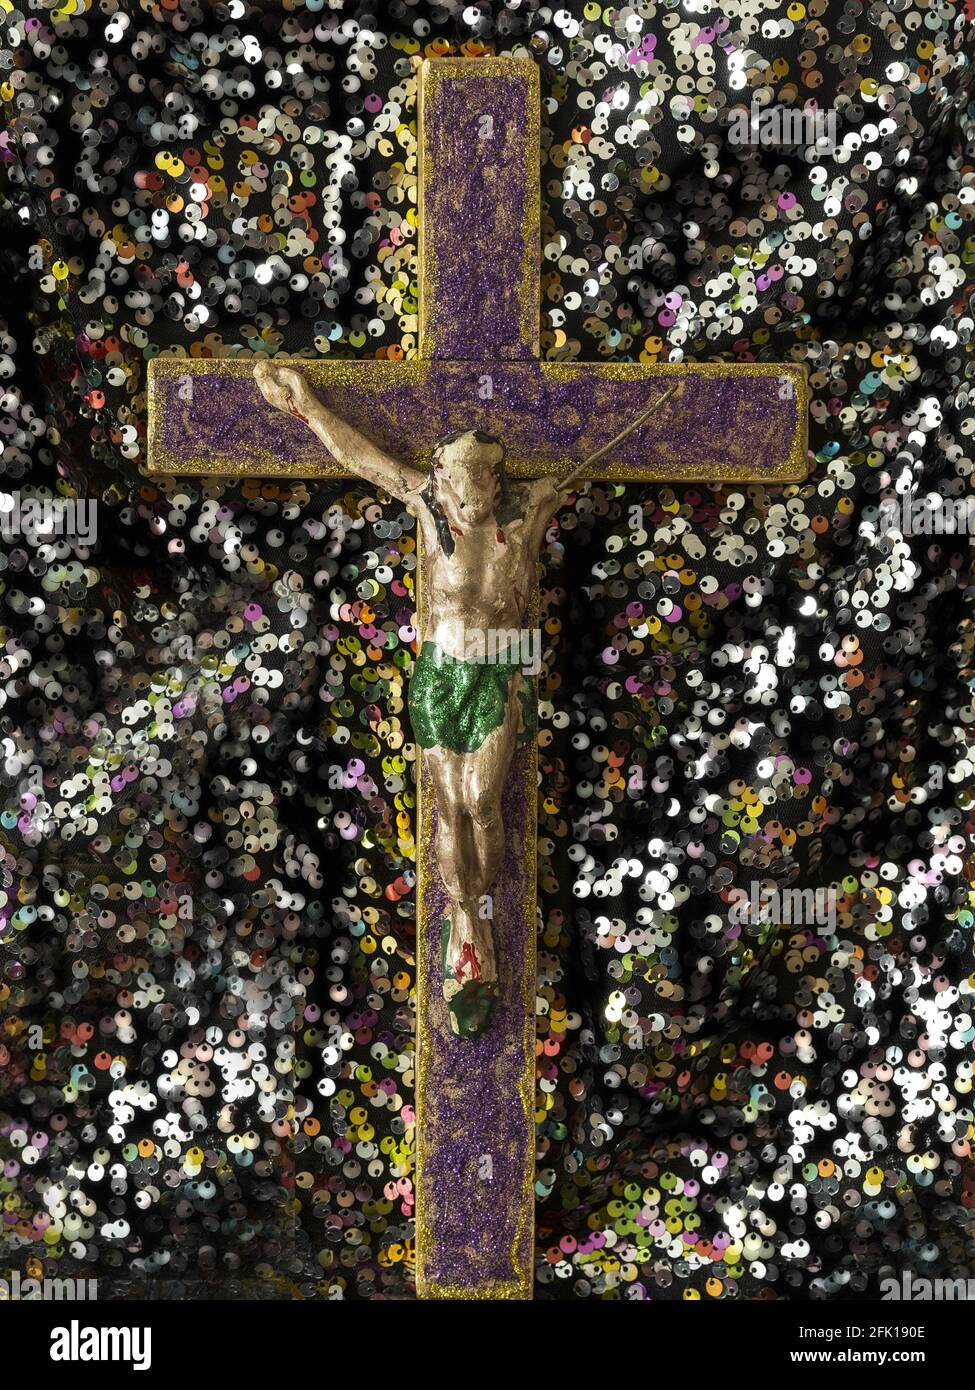 Jesus on the cross Stock Photo